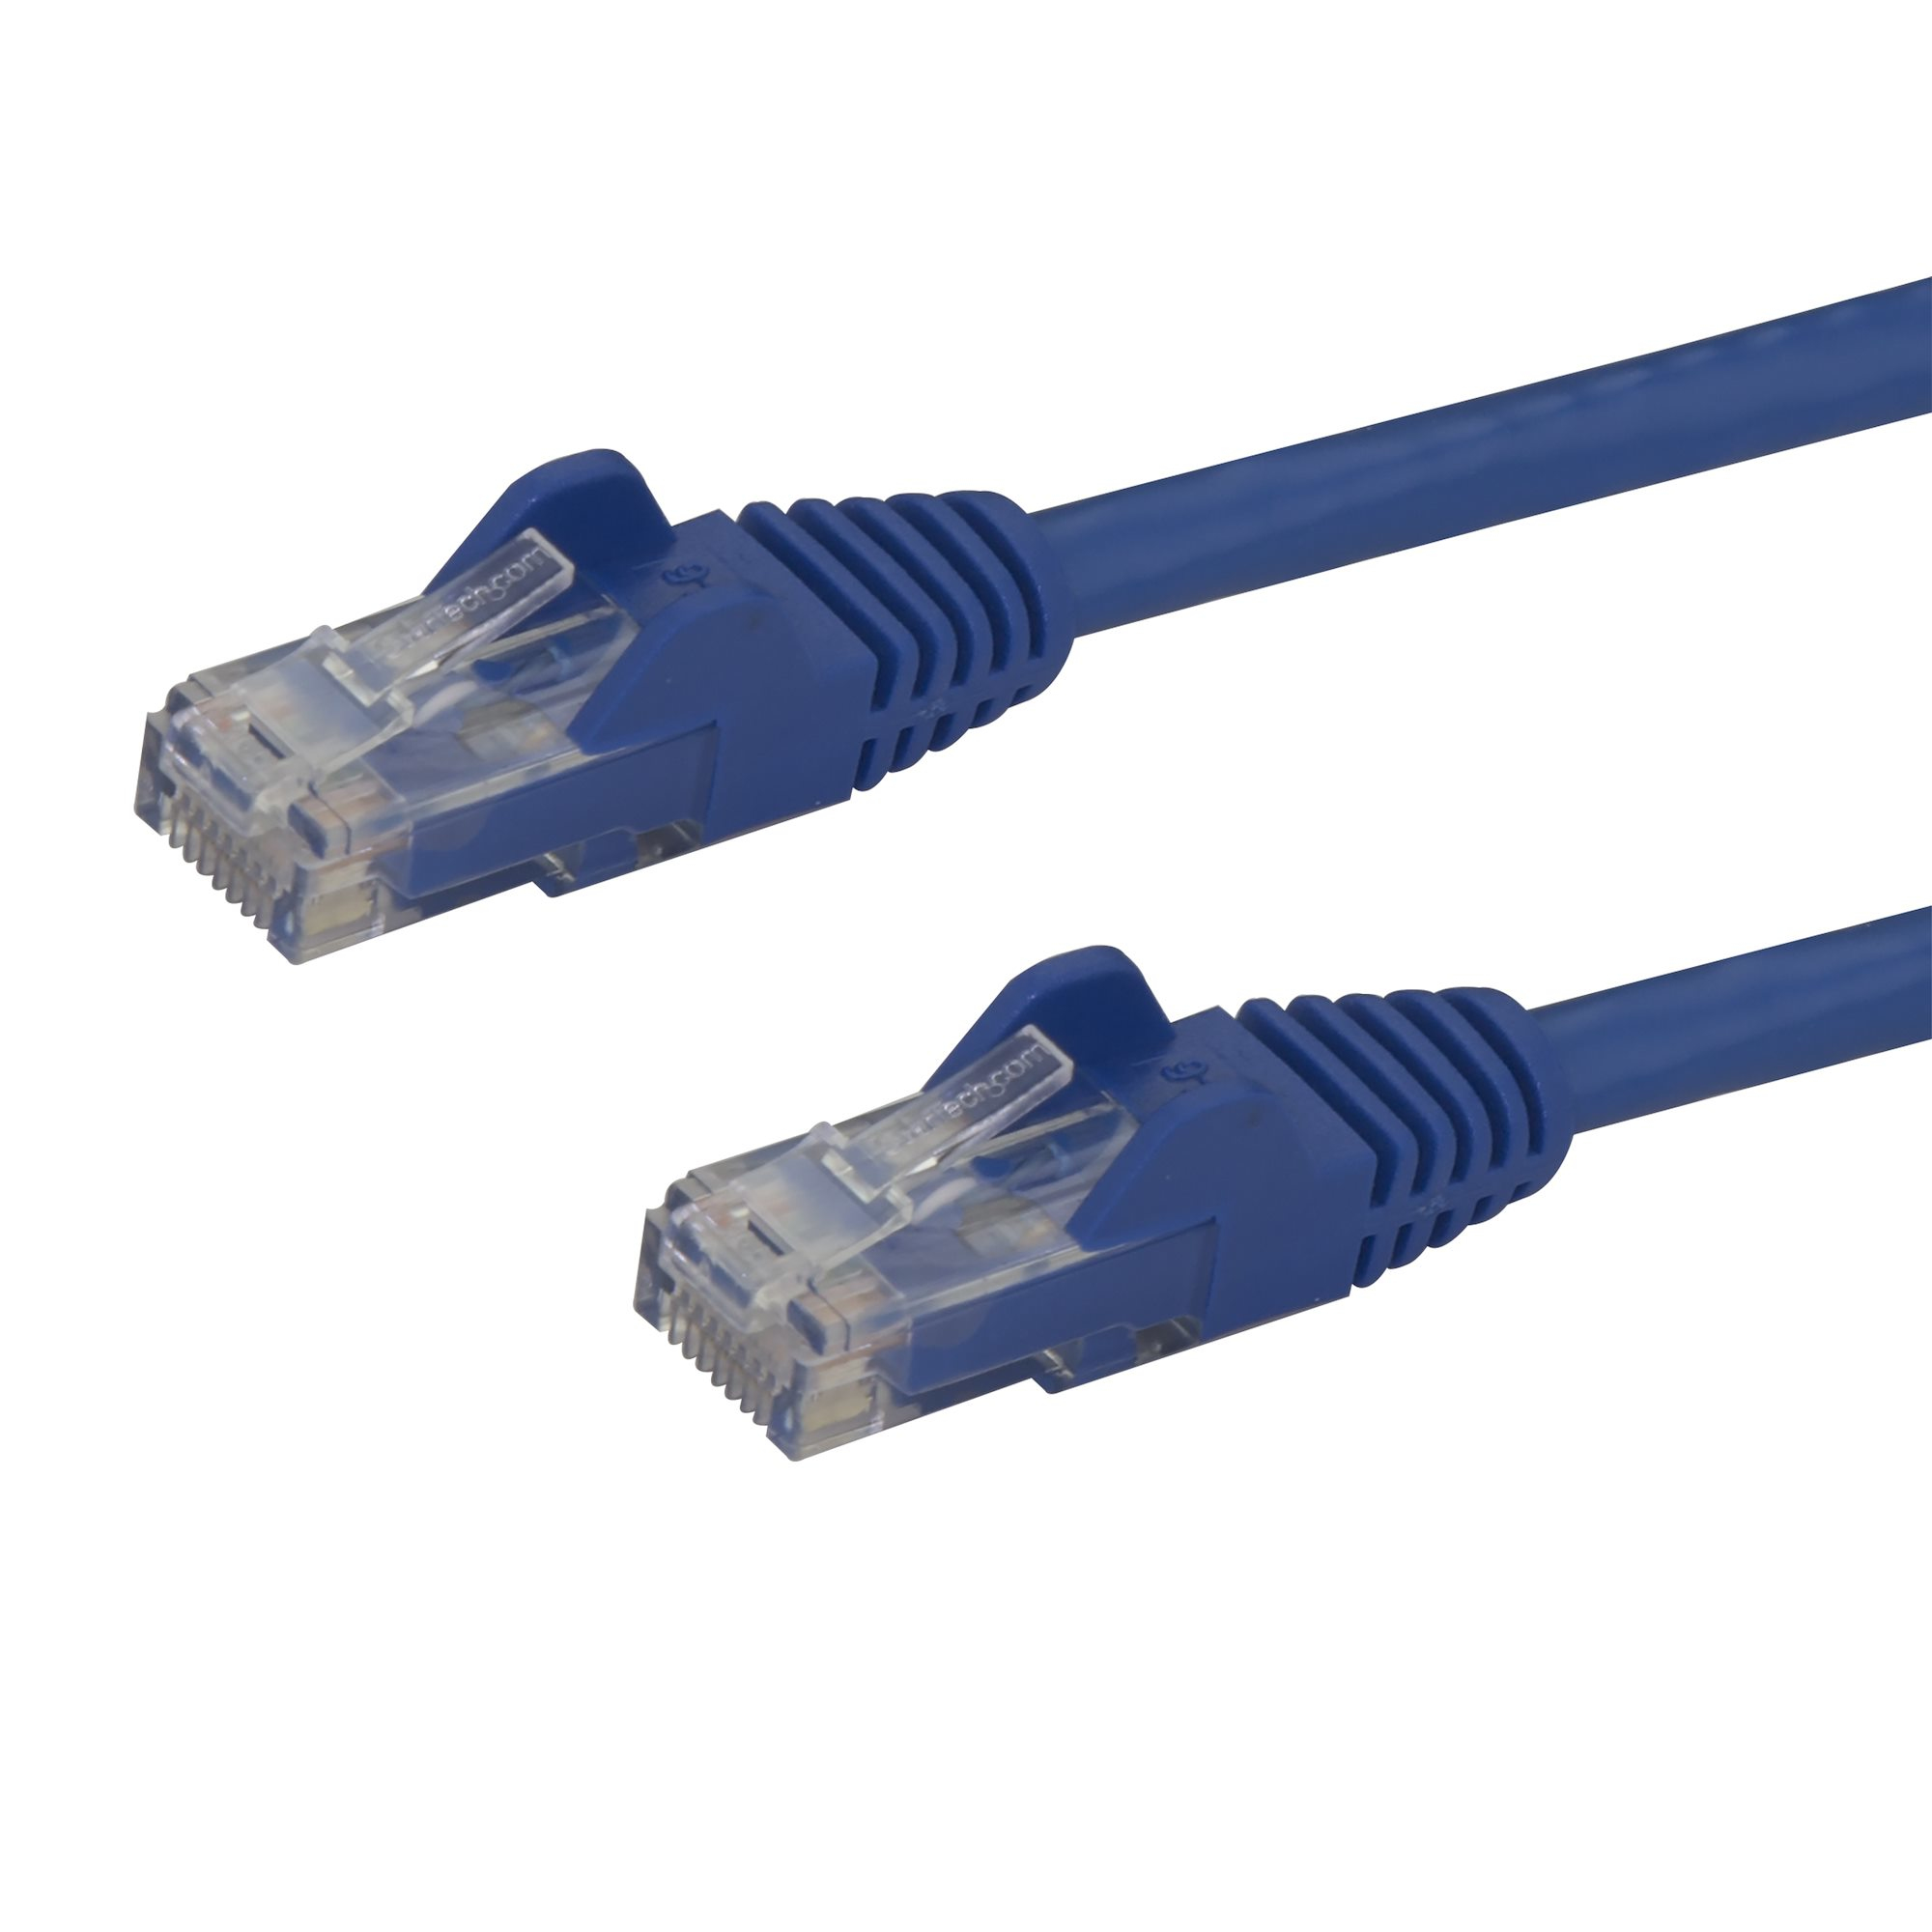 Cable Patch Startech De 1.8M Azul Cat6 6 Rj-45 Macho N6Patch6Bl